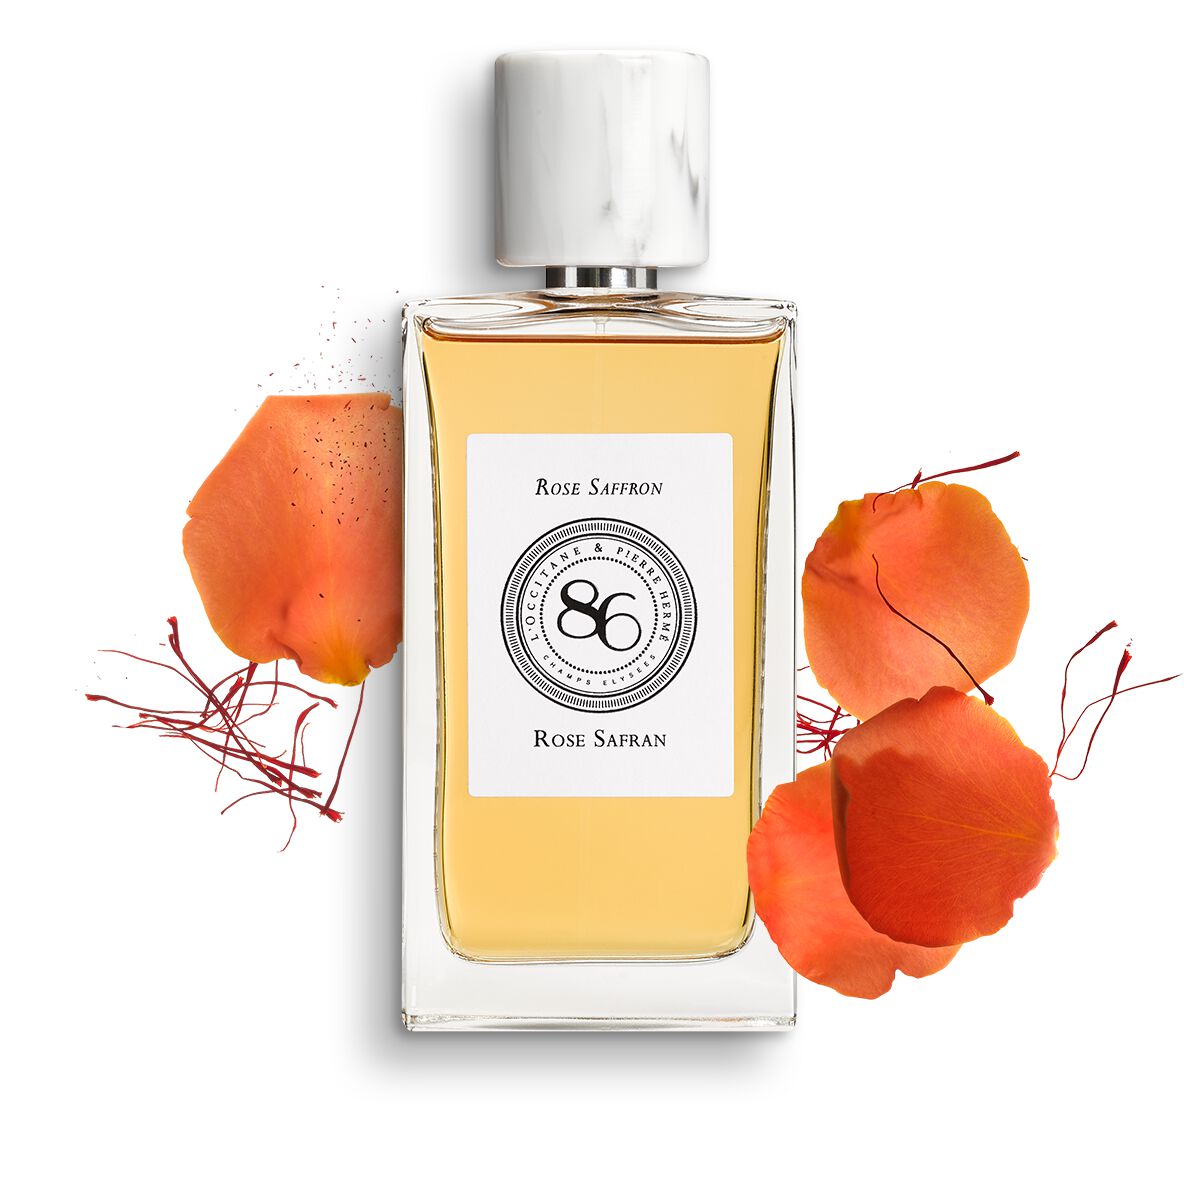 Collection de Parfums 86 Champs - Rose Safran 90 ml - L'Occitane en Provence von L'Occitane en Provence